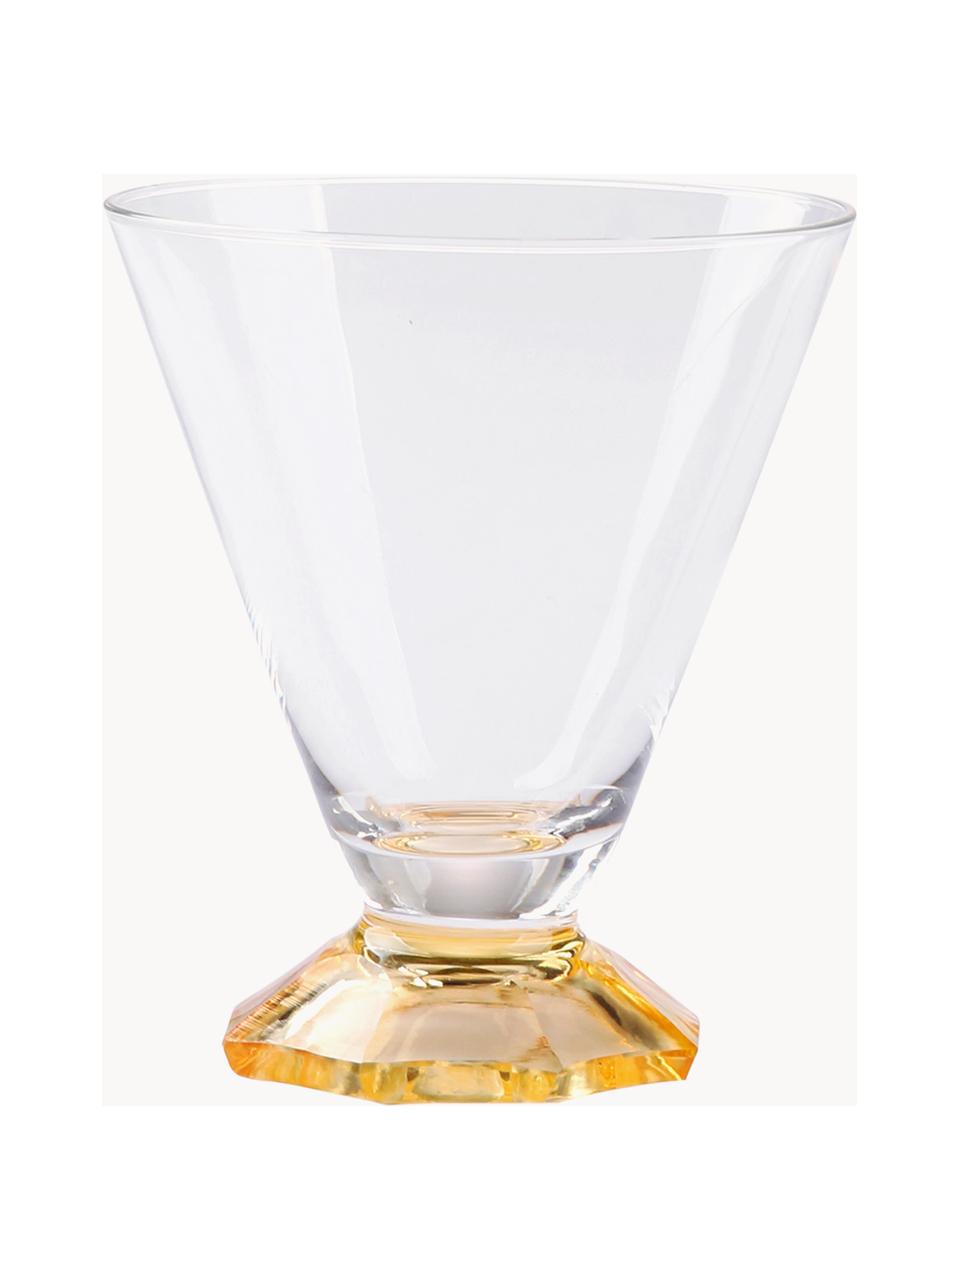 Sada ručně vyrobených sklenic na koktejly Aylee, 4 díly, Sklo, Transparentní, béžové a hnědé odstíny, Ø 9 cm, V 10 cm, 200 ml